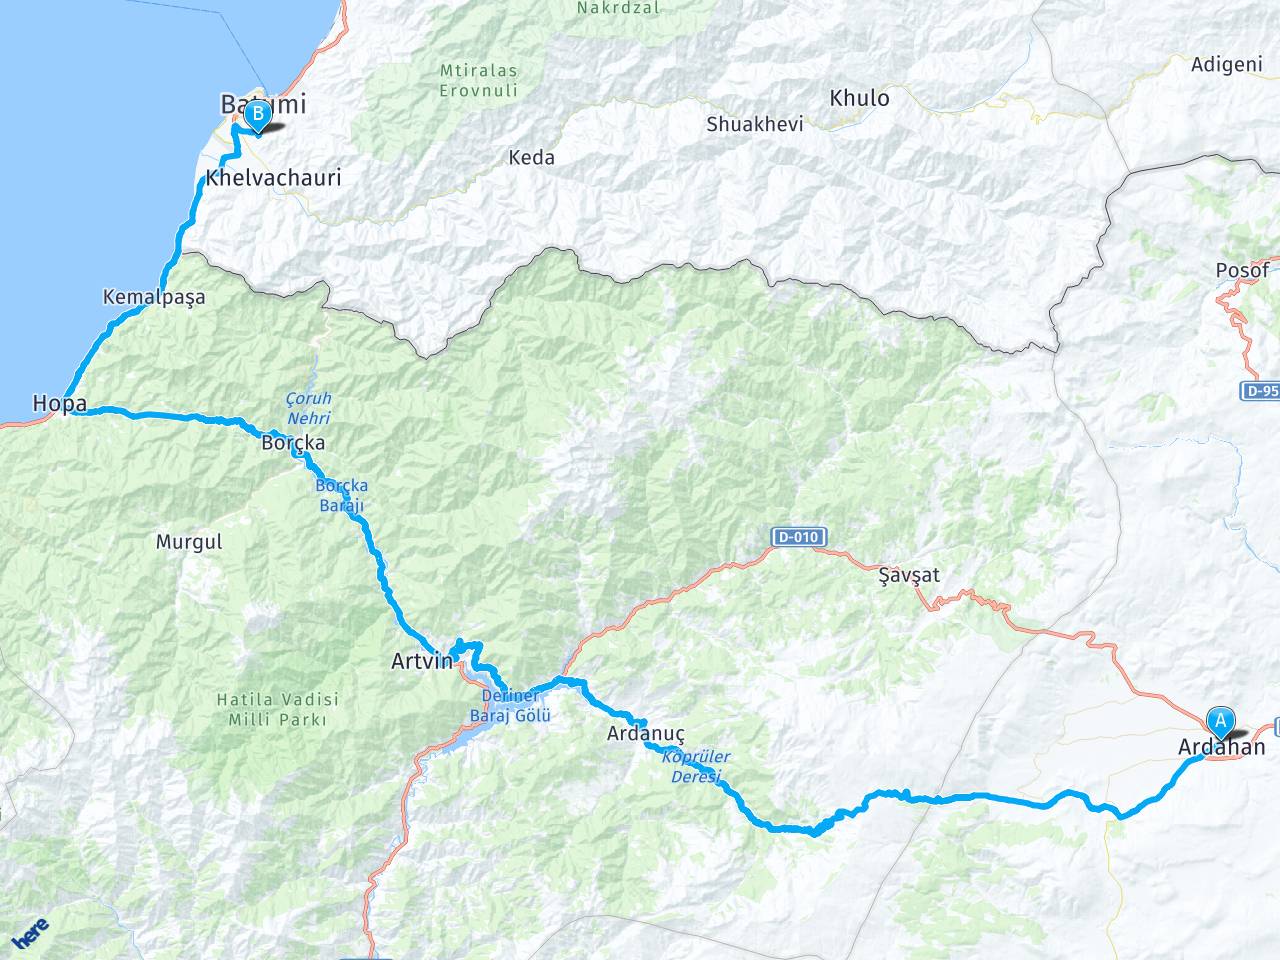 ardahan gurcistan batum arasi mesafe ardahan gurcistan batum yol haritasi ardahan gurcistan batum kac saat kac km